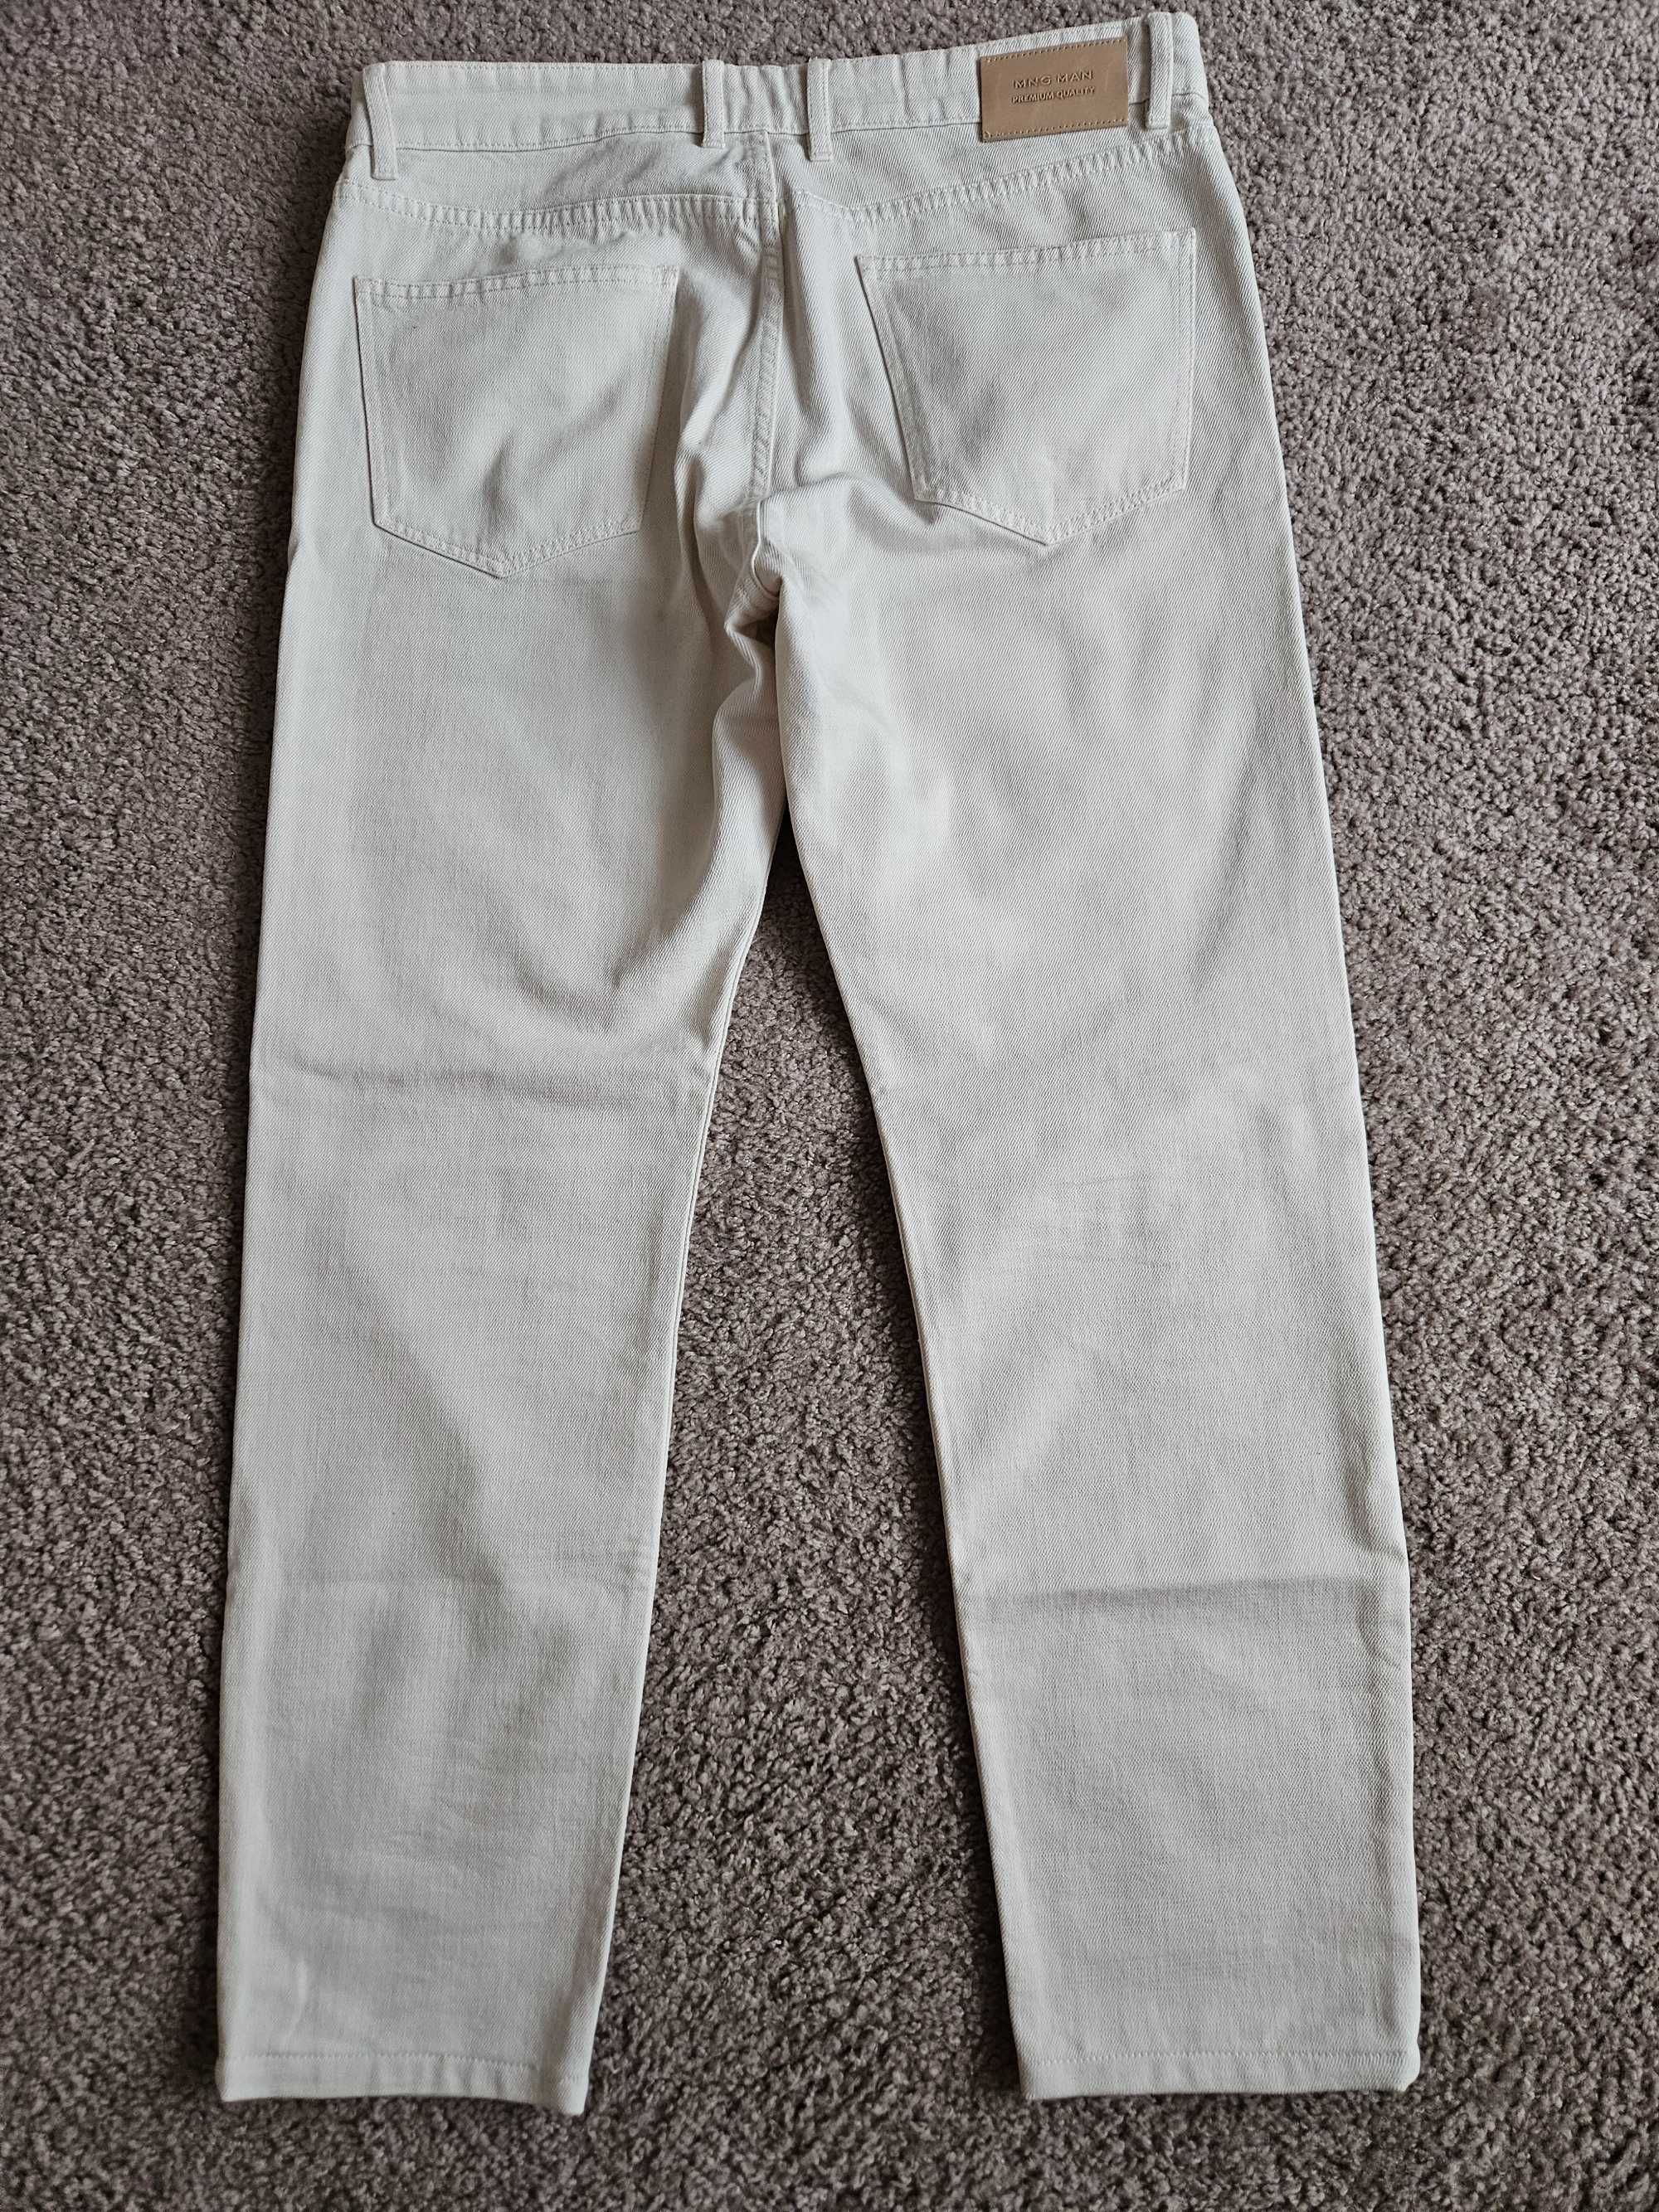 Kremowe/białe jeansy Mango Premium roz. 34